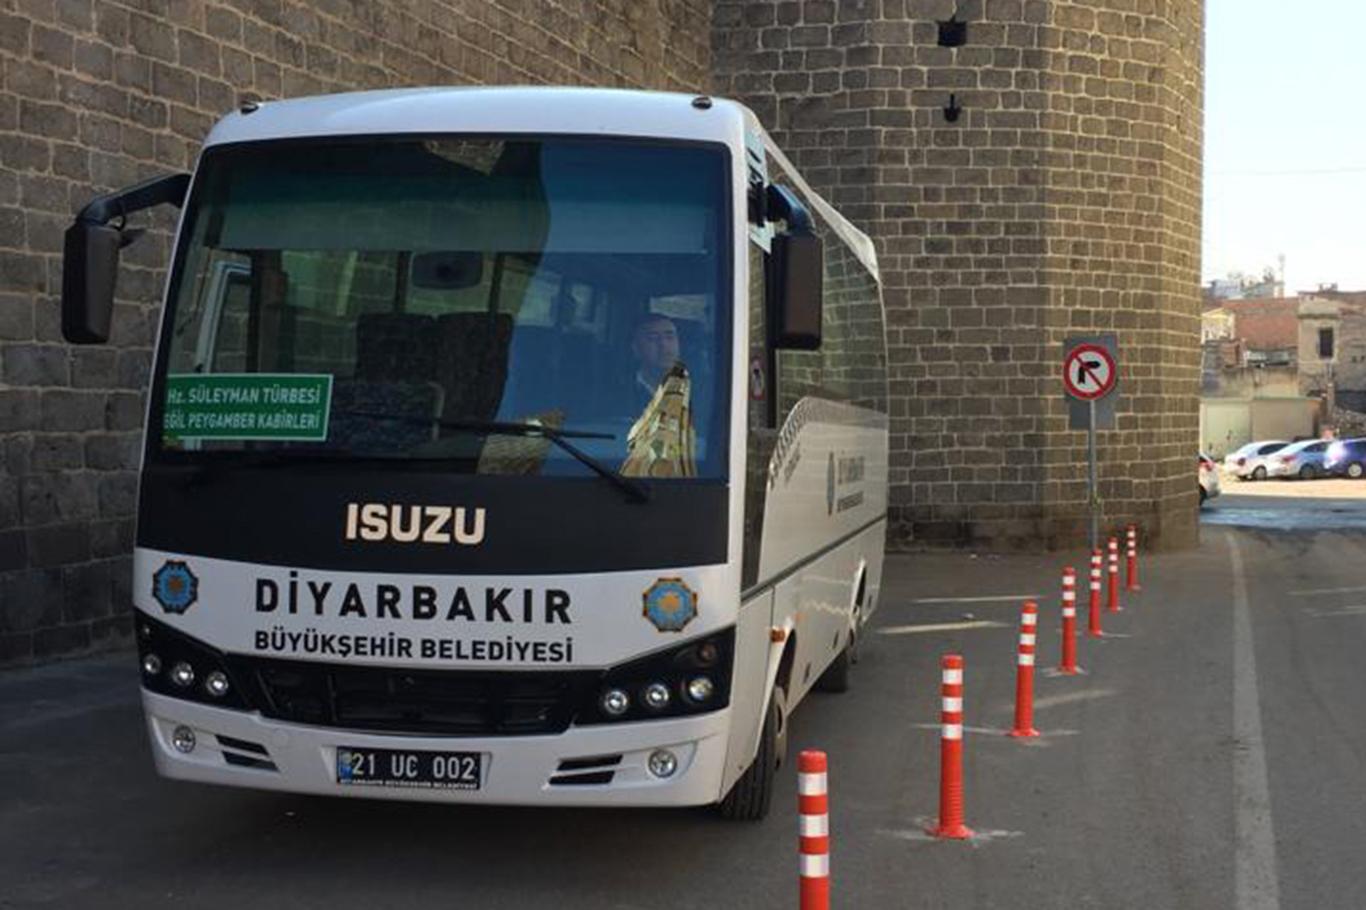 Diyarbakır'daki türbelere ücretsiz servis başladı